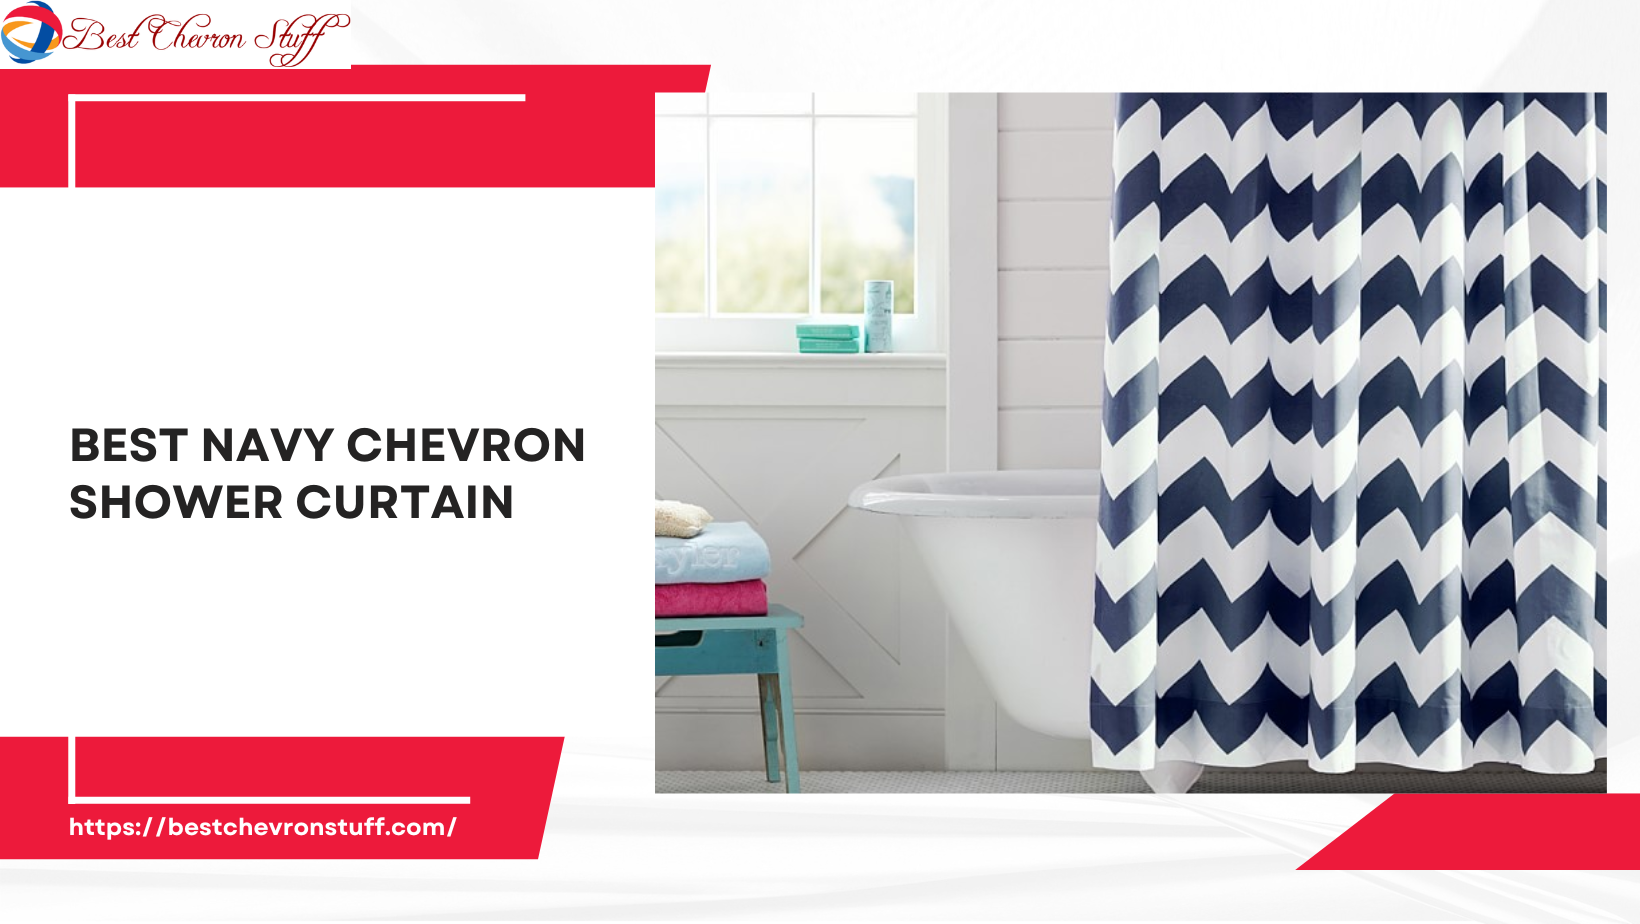 Best Navy Chevron Shower Curtain